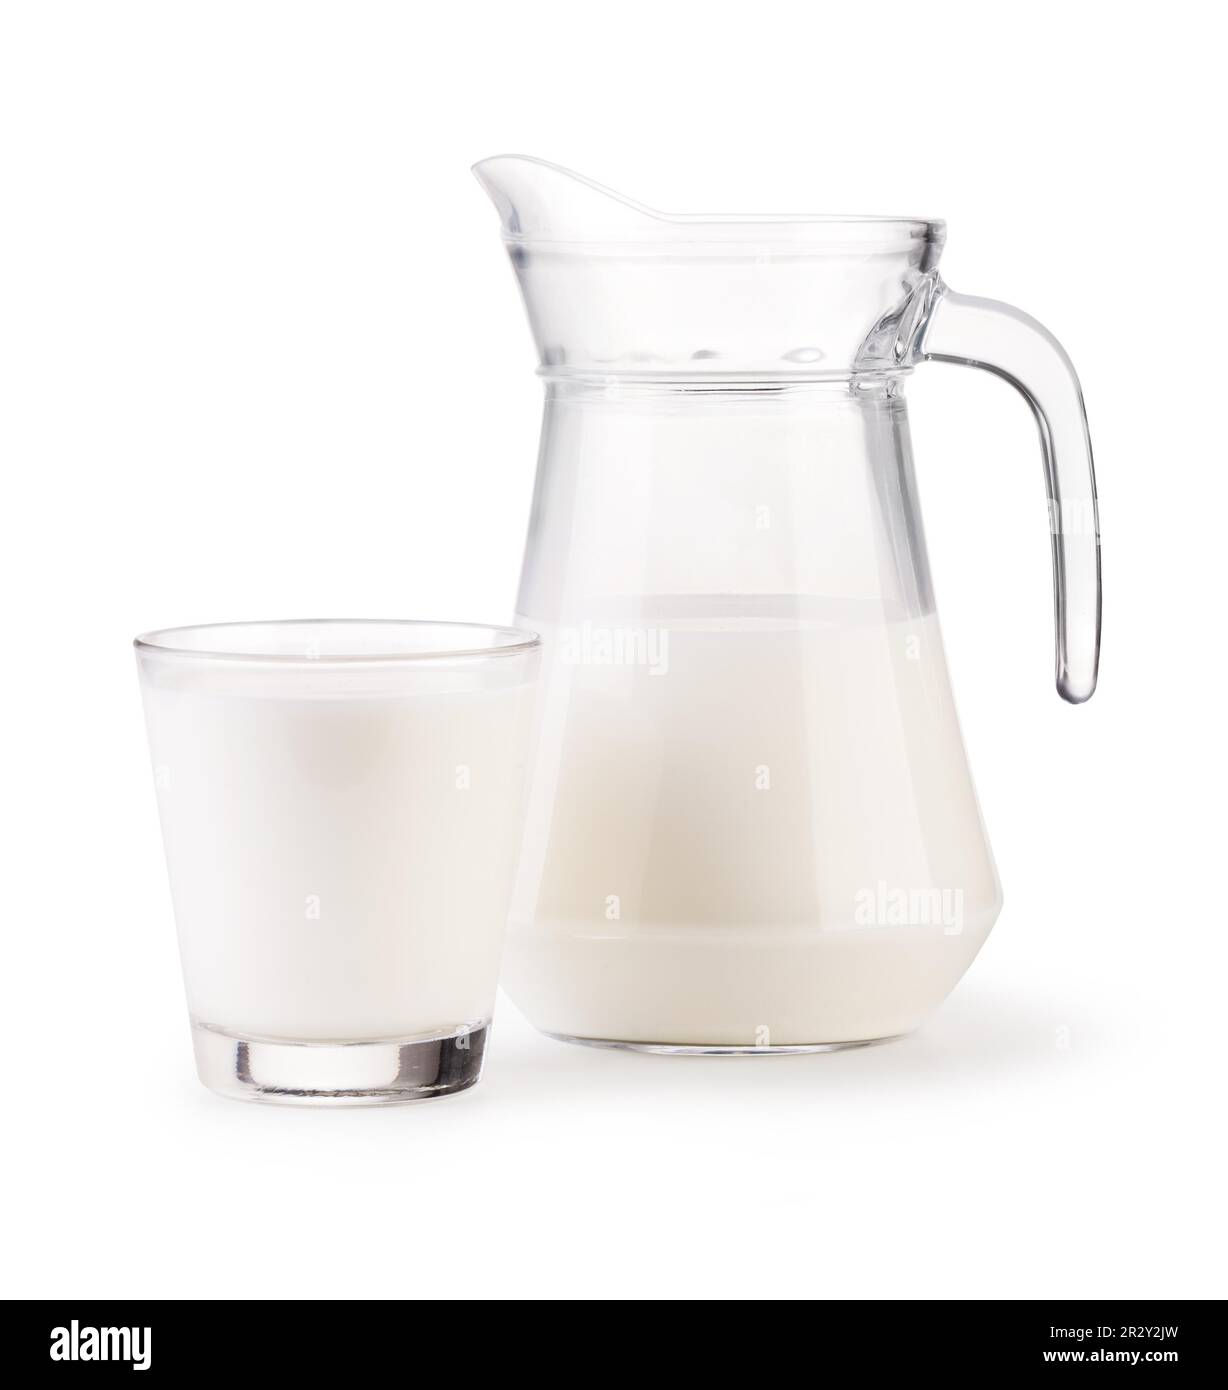 Cierra la jarra de leche. jarra de leche aislado sobre fondo blanco.  trazado de recorte. jarra de leche de cristal.